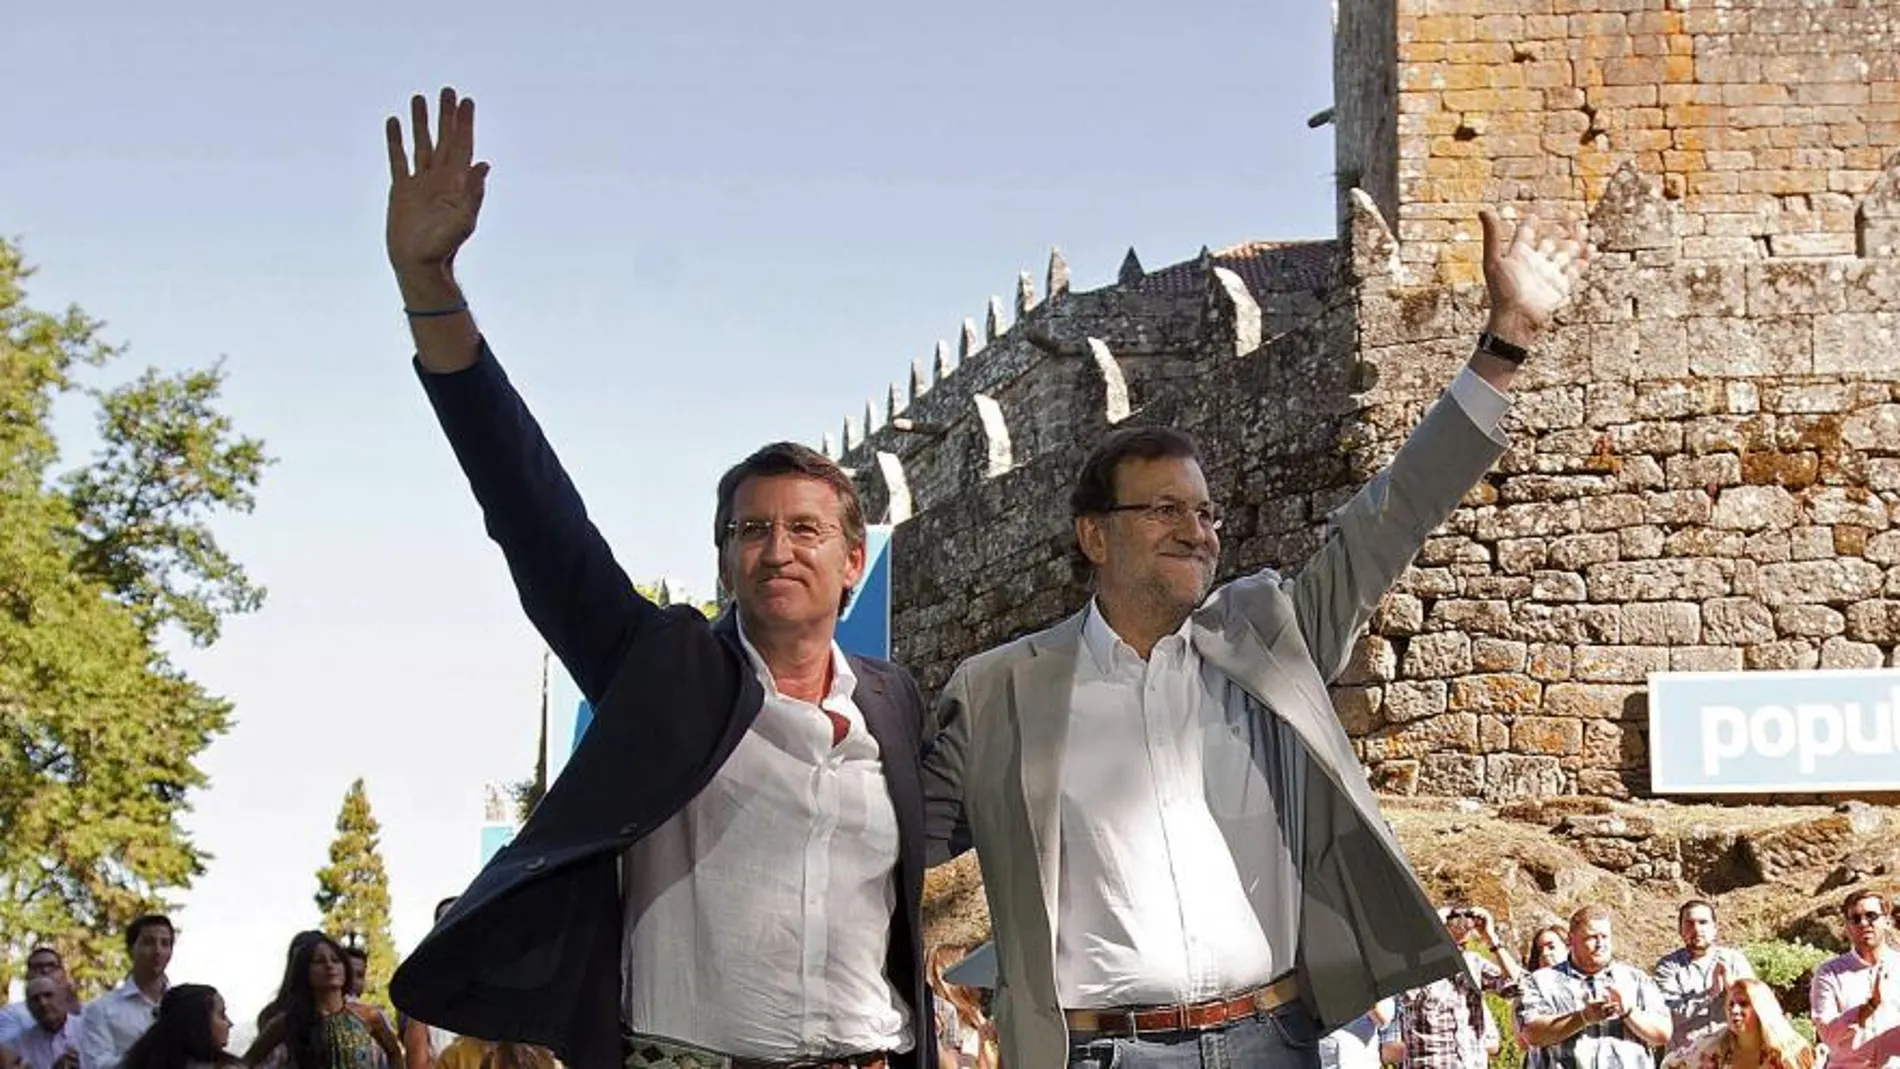 Fotografía facilitada por el PP del jefe del Ejecutivo, Mariano Rajoy (d), y el presidente de la Xunta de Galicia, Alberto Núñez Feijóo, saludando durante el tradicional acto de apertura del curso político en en castillo de Soutomaior (Pontevedra)